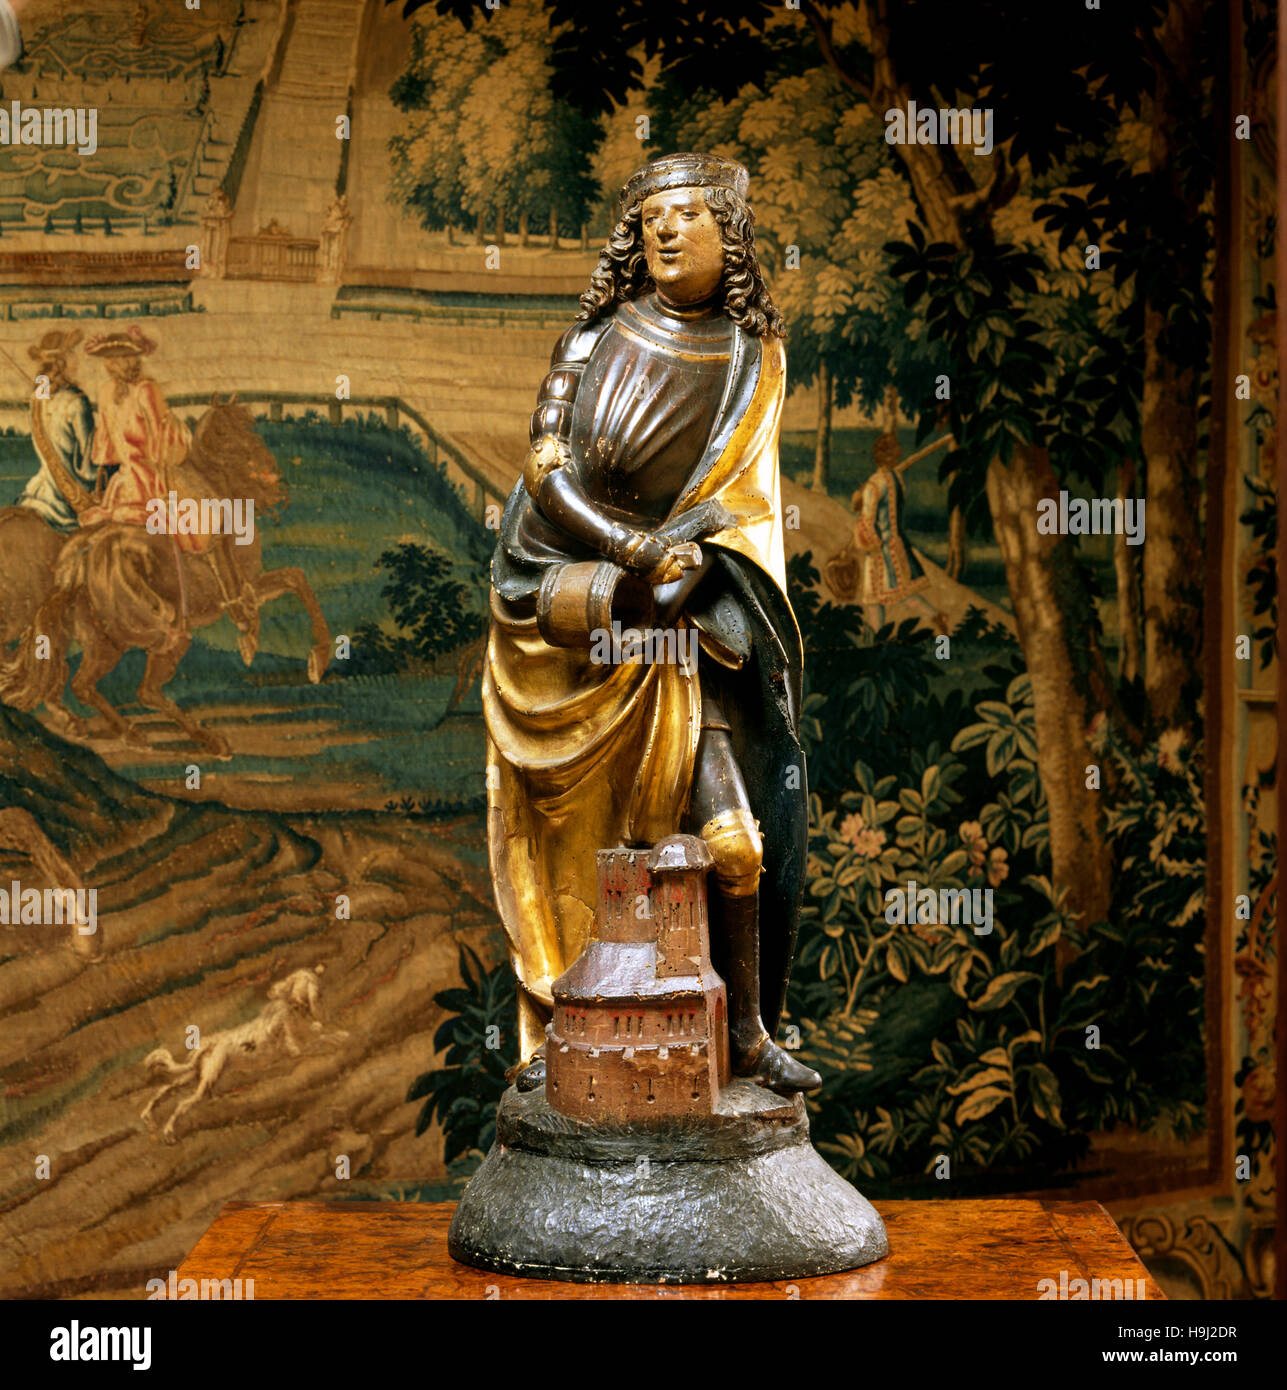 Vista cercana de comienzos del siglo XVI la figura de la madera de cedro de San Florián en el corredor de la biblioteca. Su protección es tradicionalmente invocado contra incendios Foto de stock